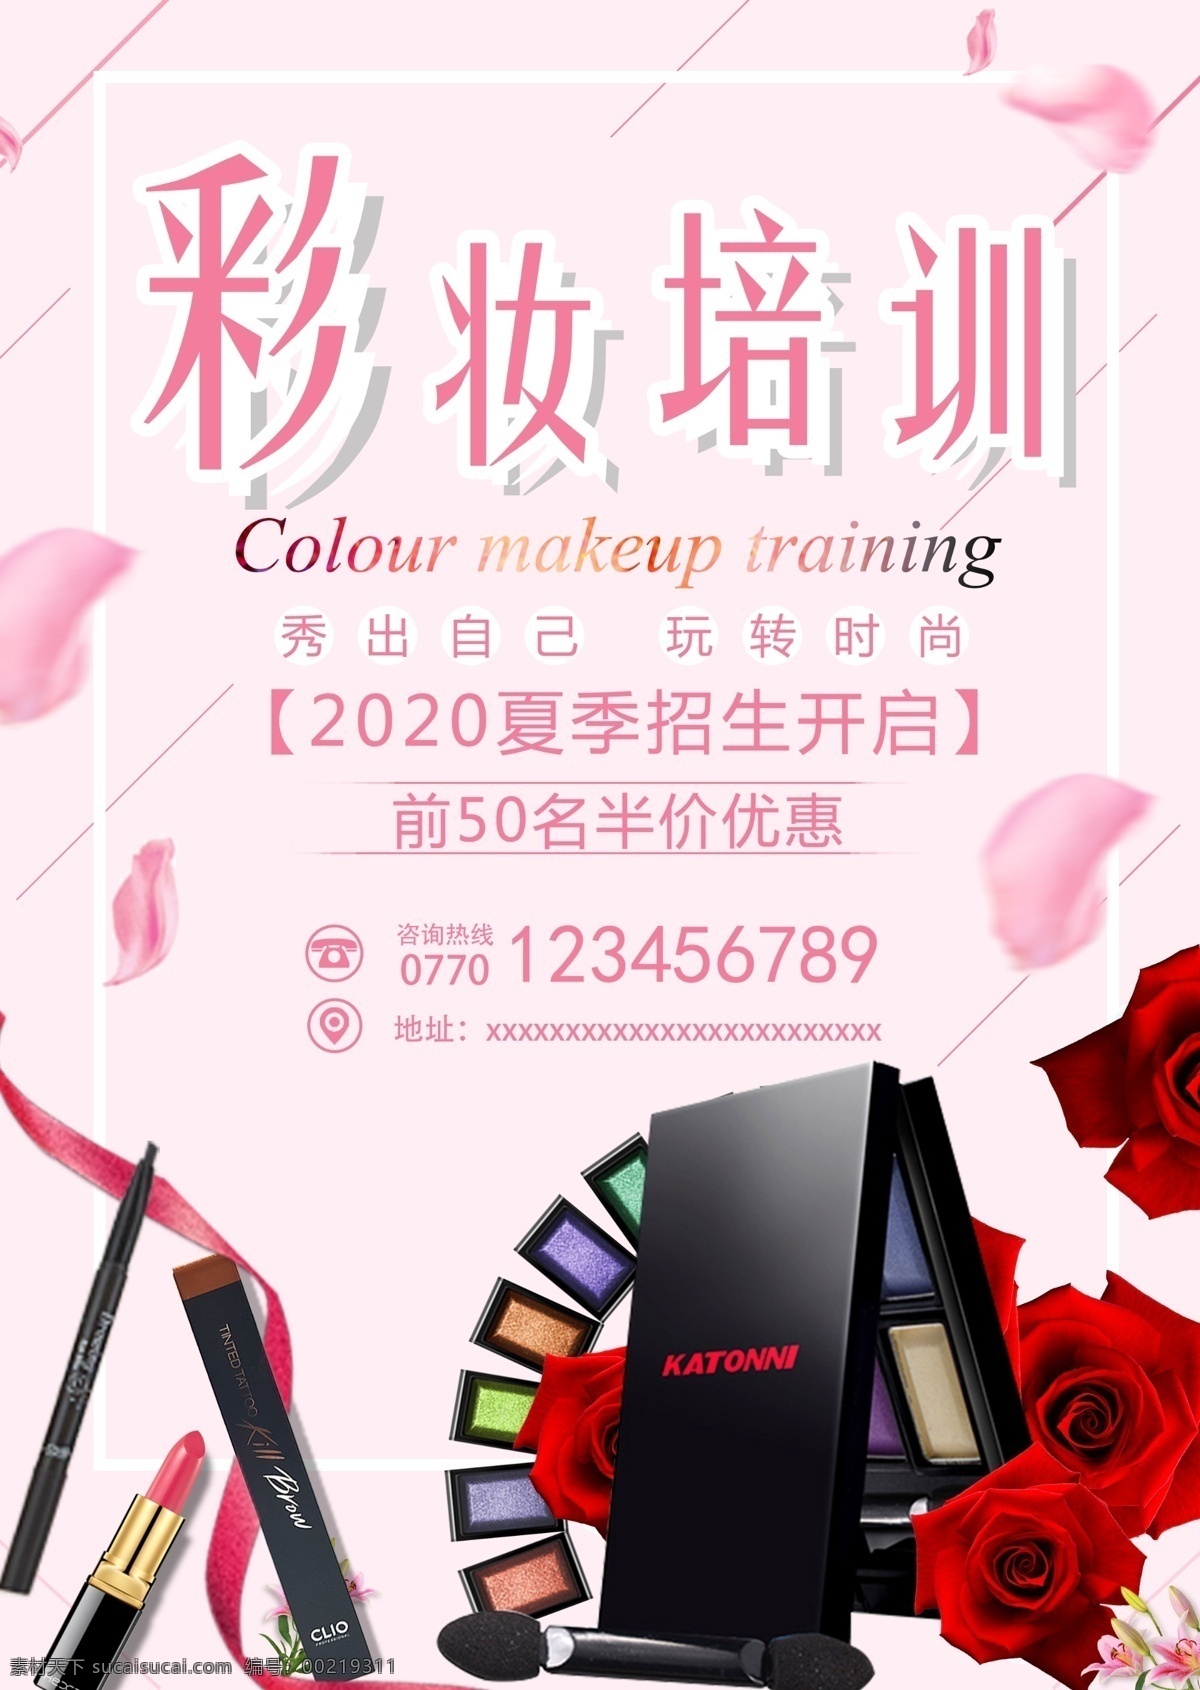 彩妆培训 化妆品 美妆 彩妆海报 招生宣传 培训 招生海报